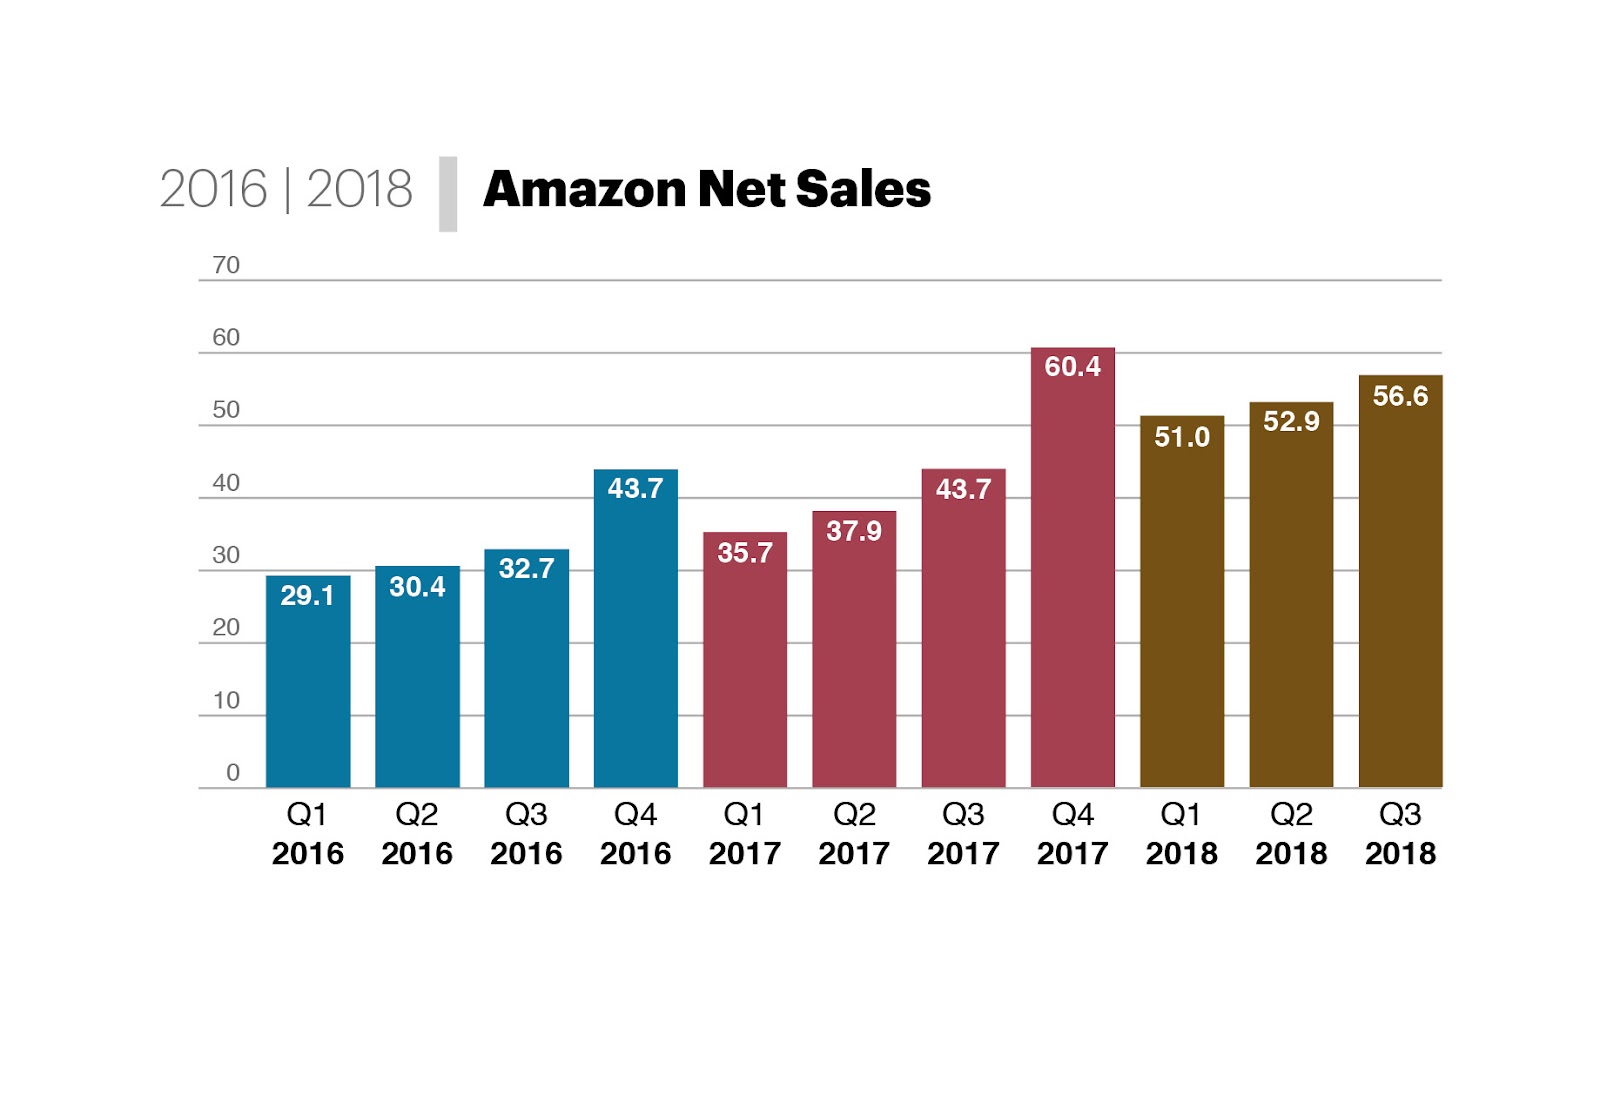 Amazon Net Sales. From 29.1 billion in Q1 2016 to 56.6 billion in Q3 2018.